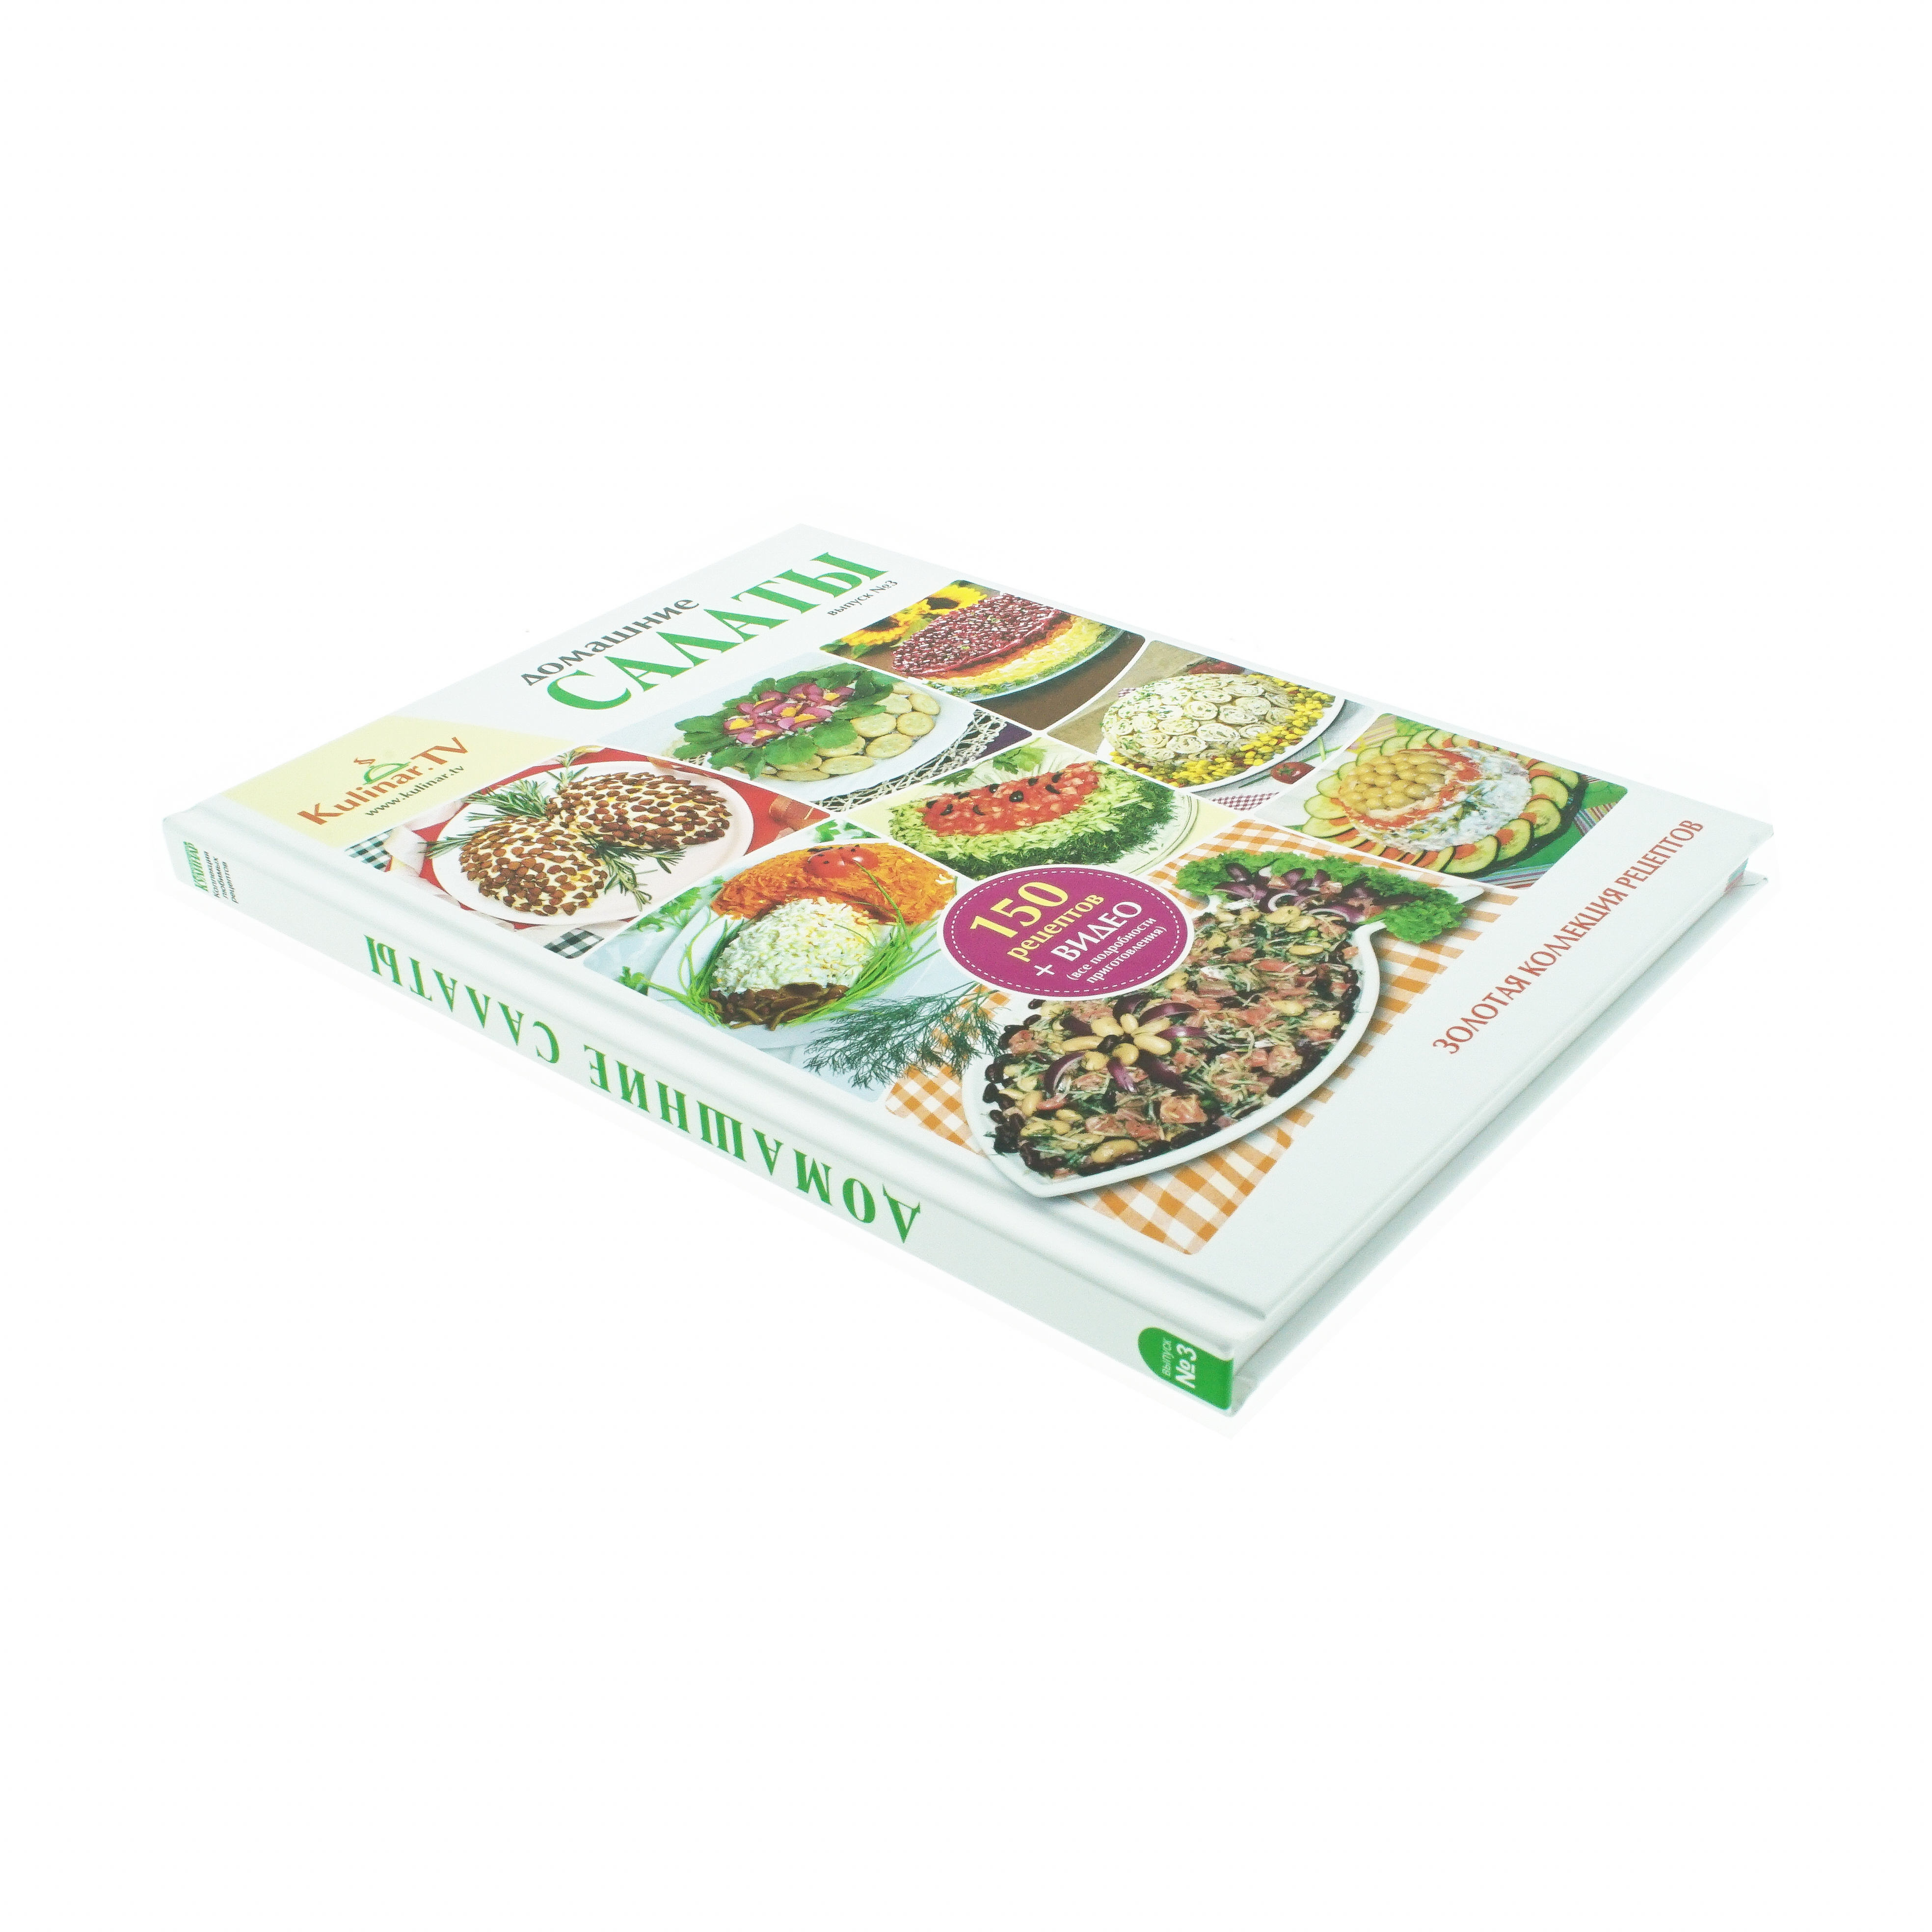 Kochbücher & Zeitschriften Kochbuch "Salate nach Hausart" von KulinarTV